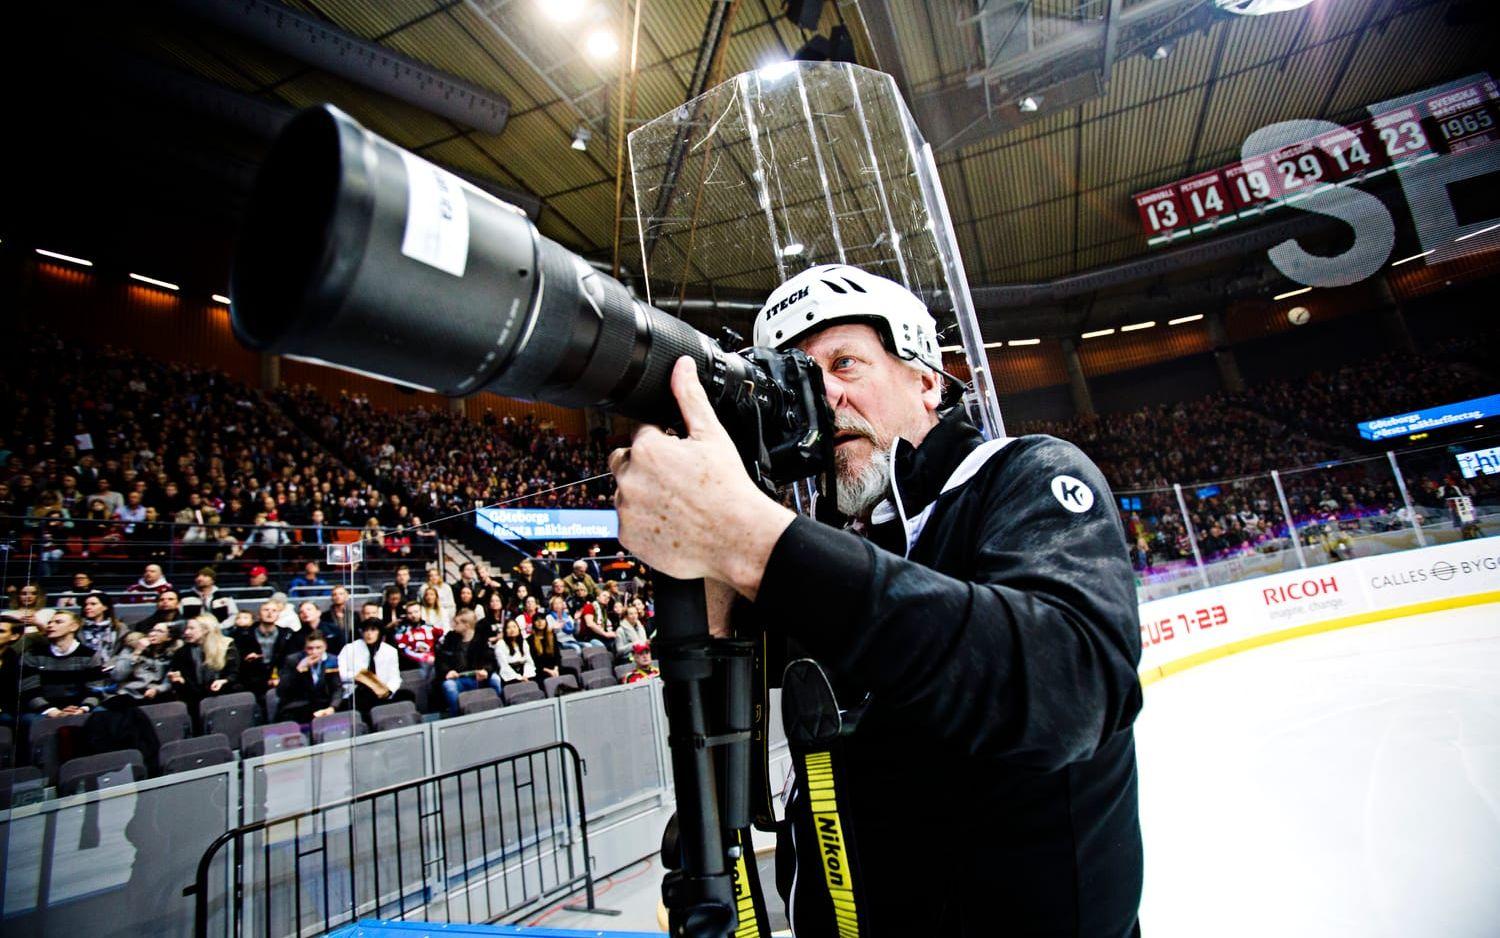 En vanlig vecka fotar han minst fyra sporthändelser i Göteborg. Bild: Tomas Ohlsson